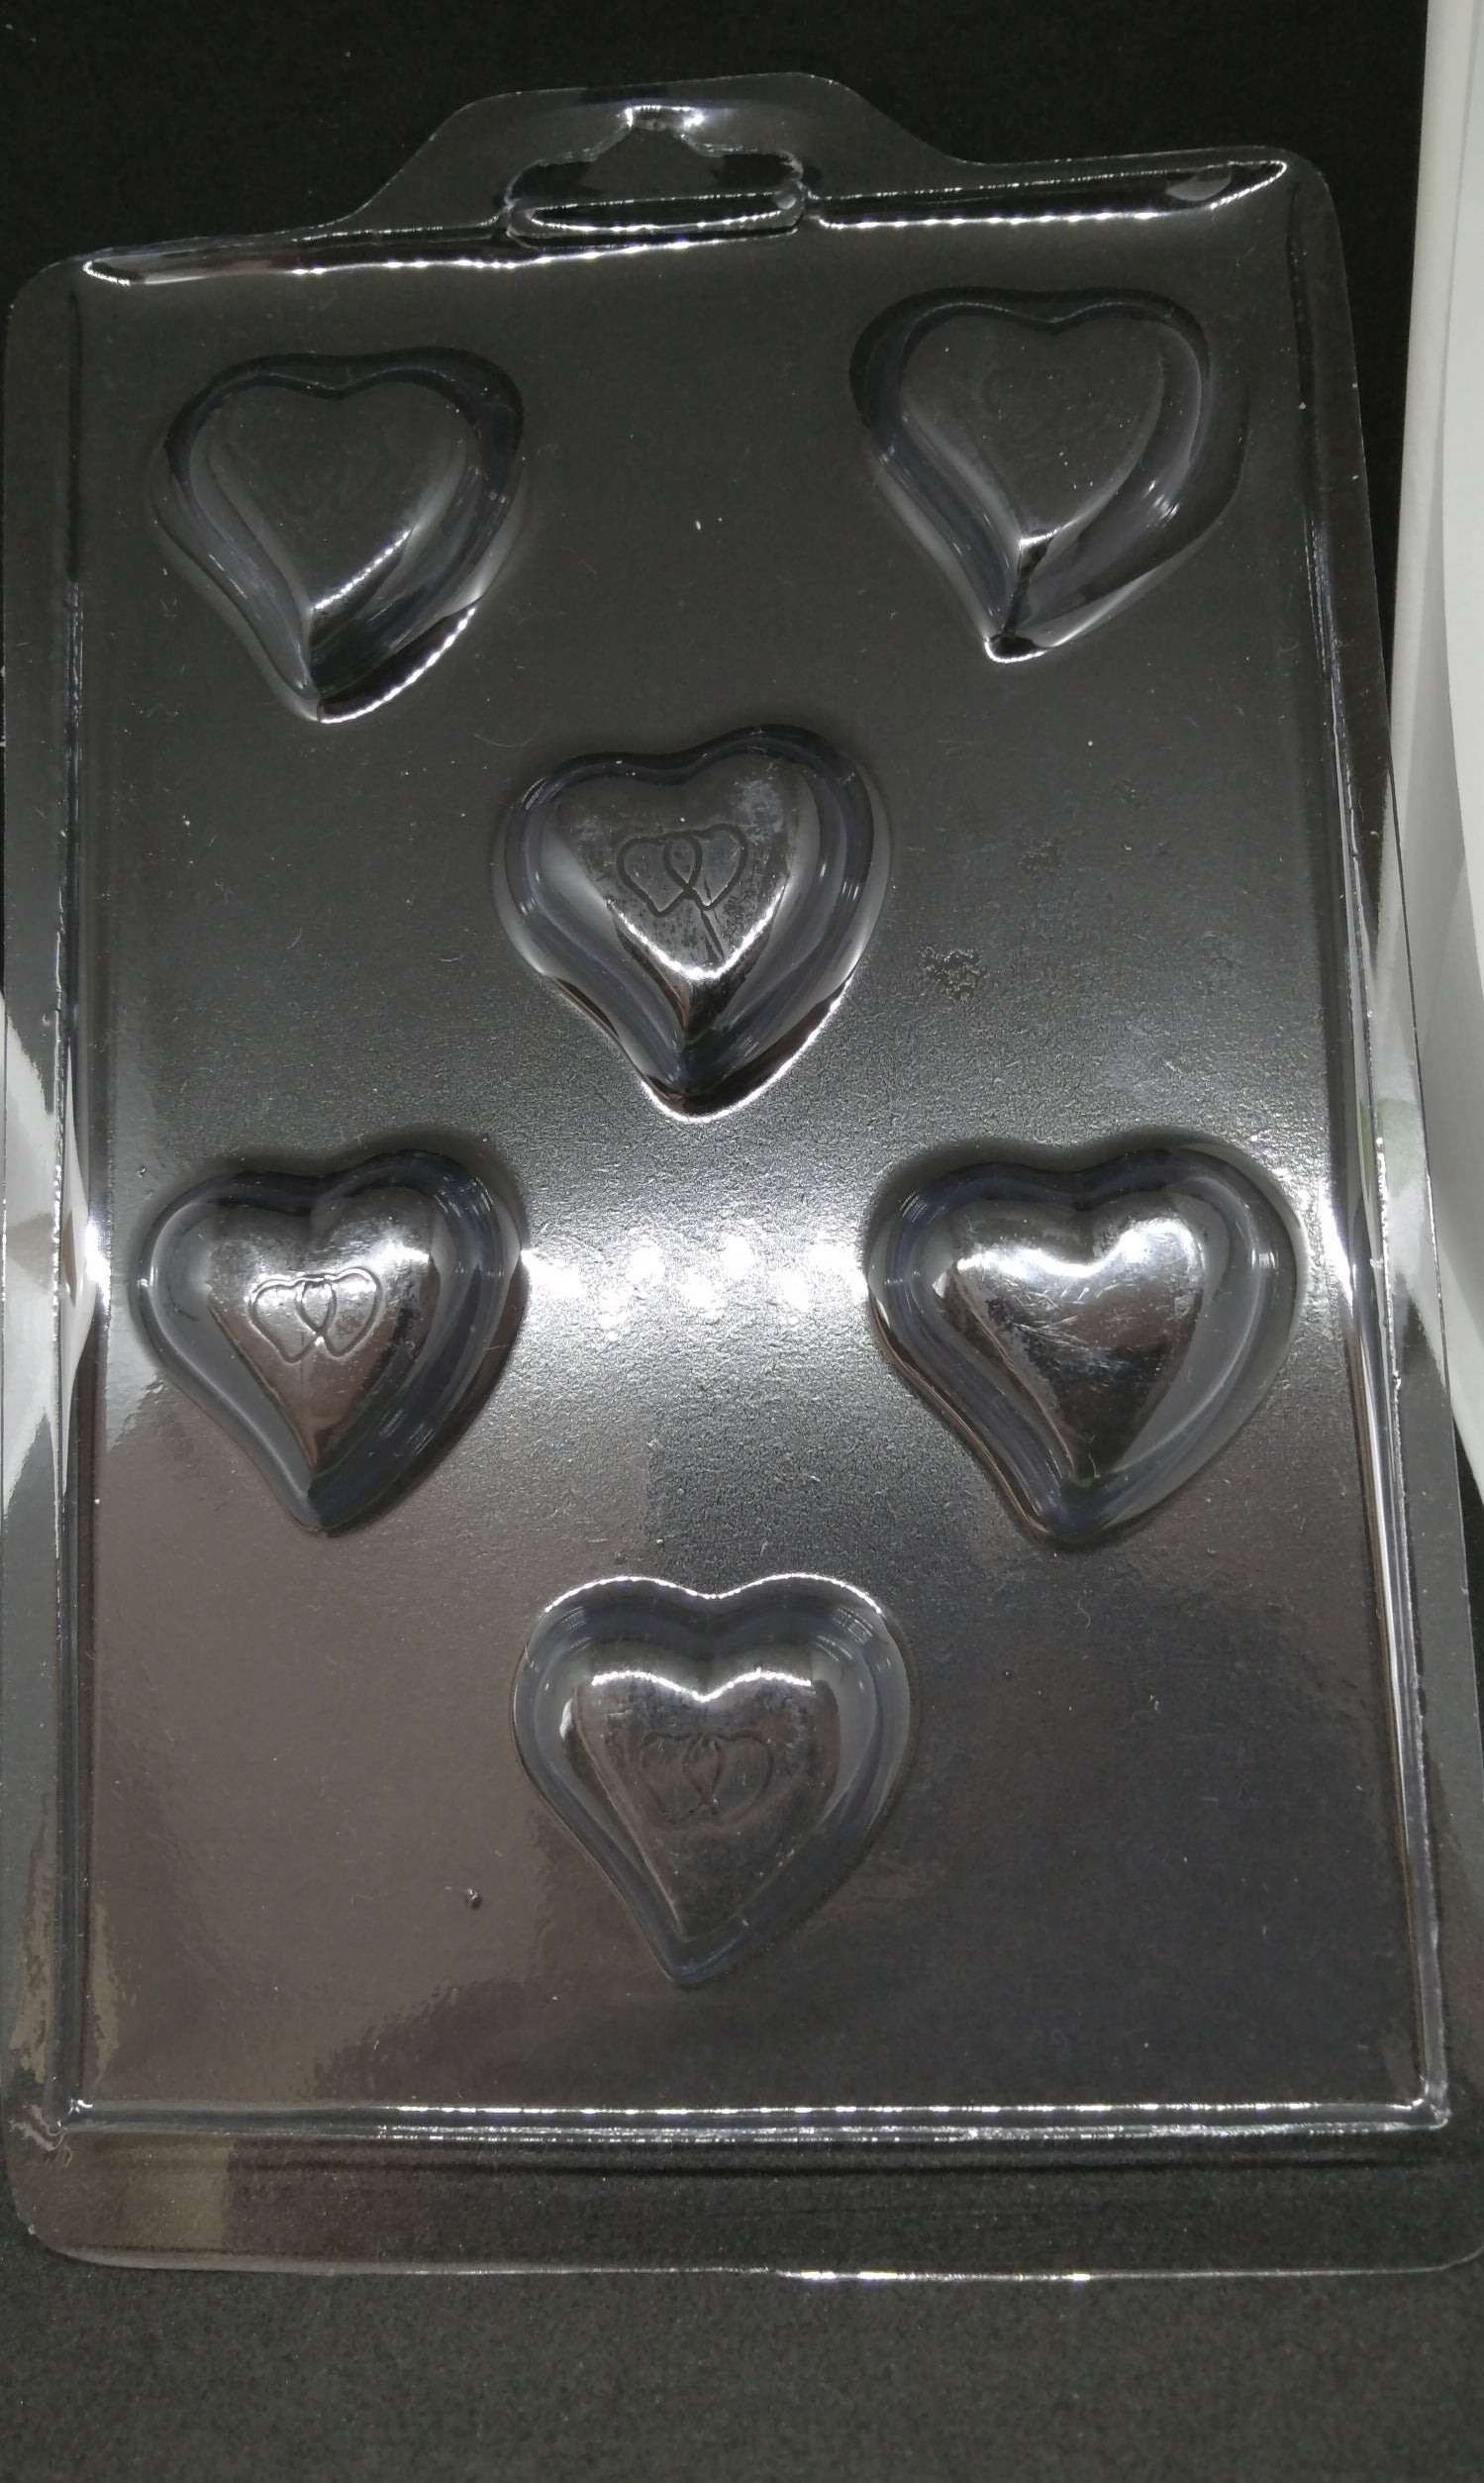 Molde silicona para chocolate corazon doble amor - Amparo Reposteria